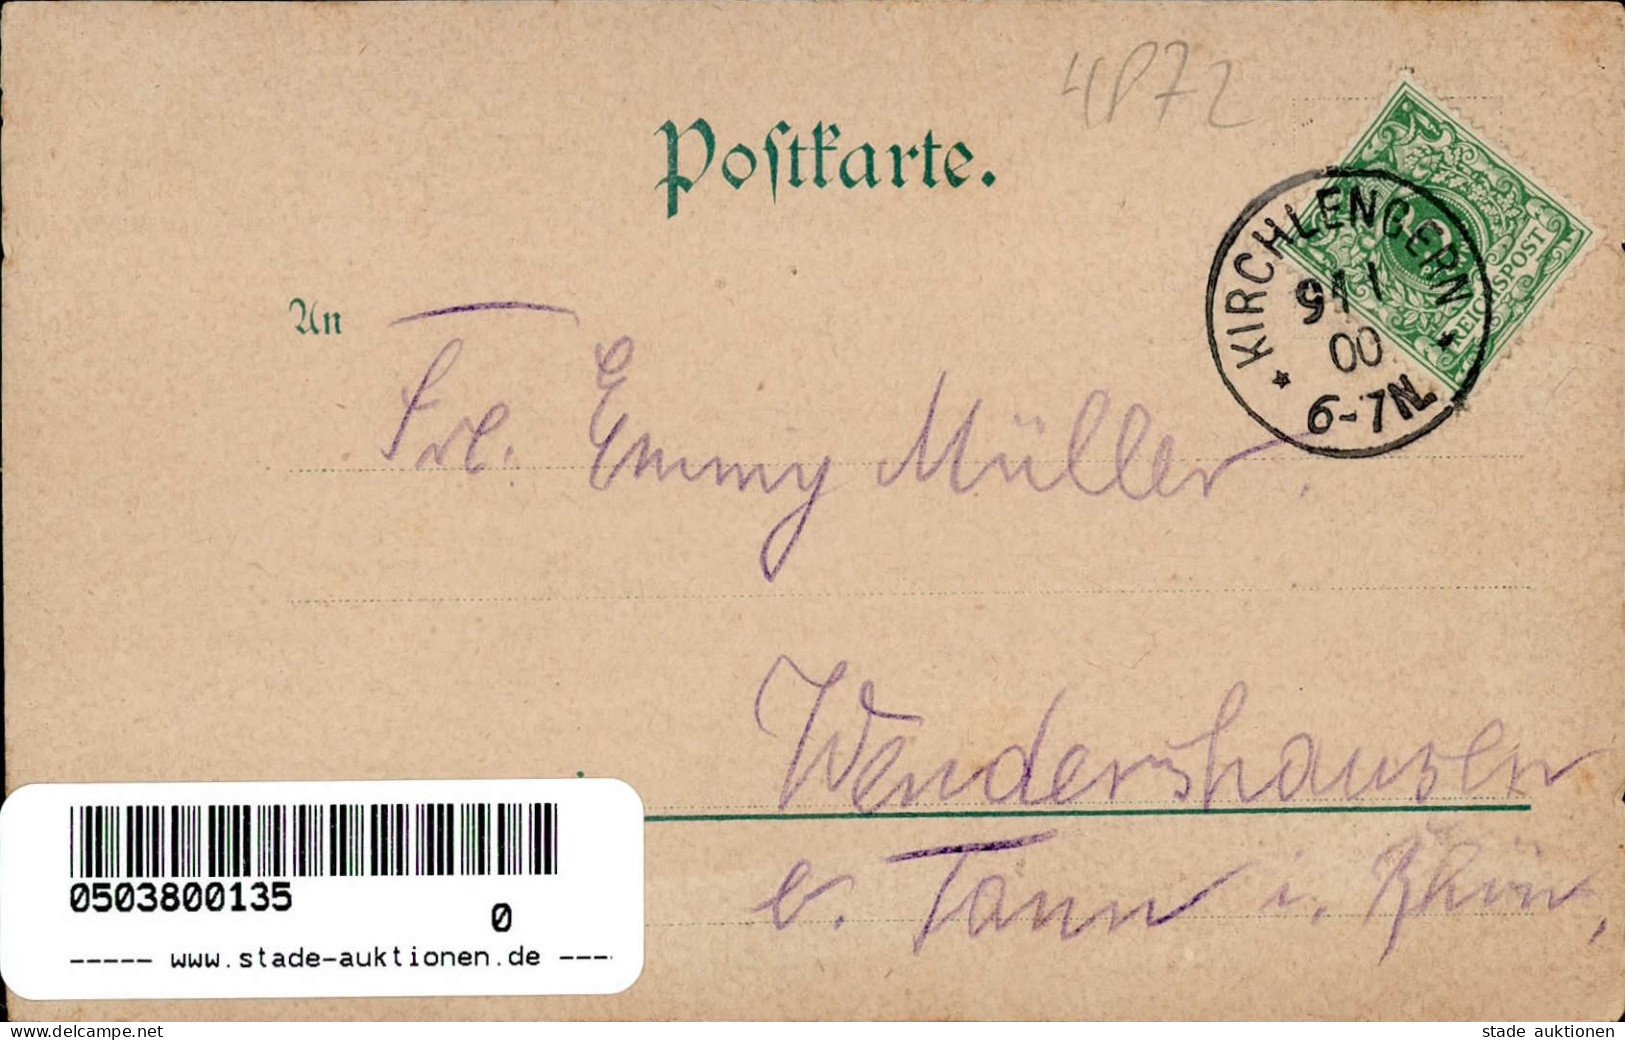 Löhne (4972) Postamt Drogen- Putz- Manufaktur- Und Kolonialwarenhandlung Gasthaus Westerhold 1900 I-II - Löhne